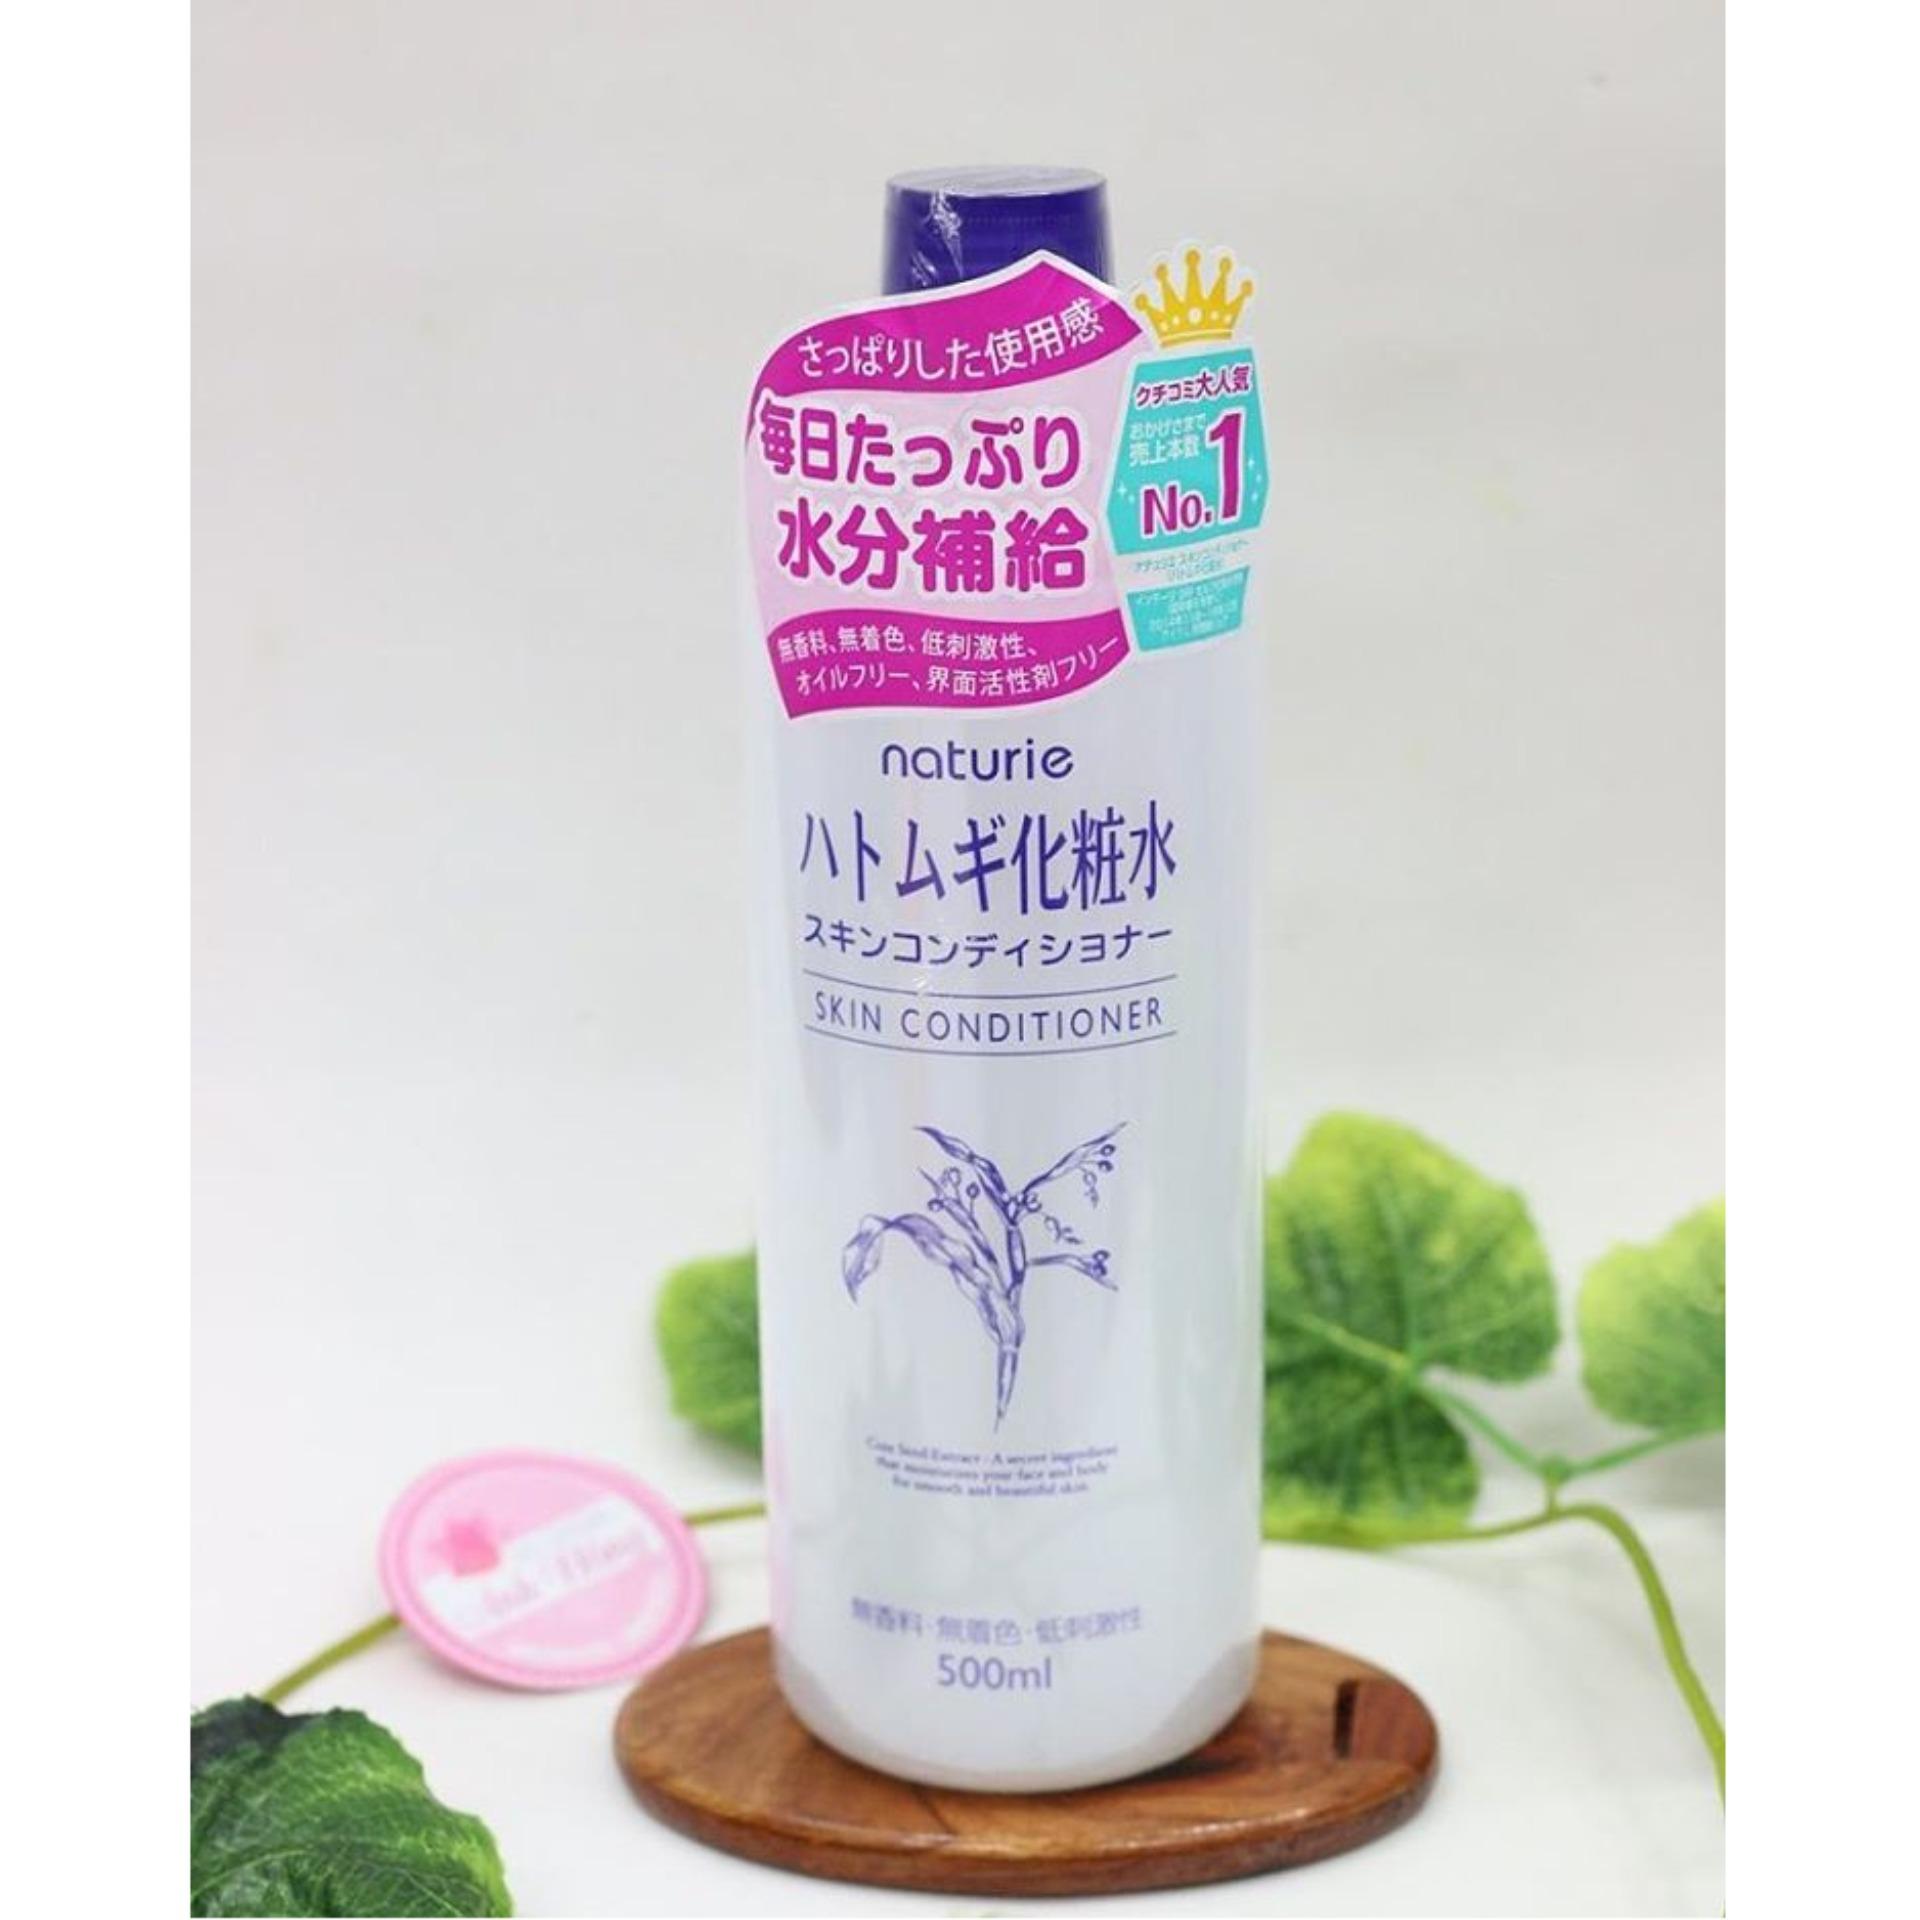 [CHÍNH HÃNG] Nước Hoa Hồng Ý Dĩ Naturie Hatomugi Skin Conditioner Nhật Bản - 500ml - TITIAN